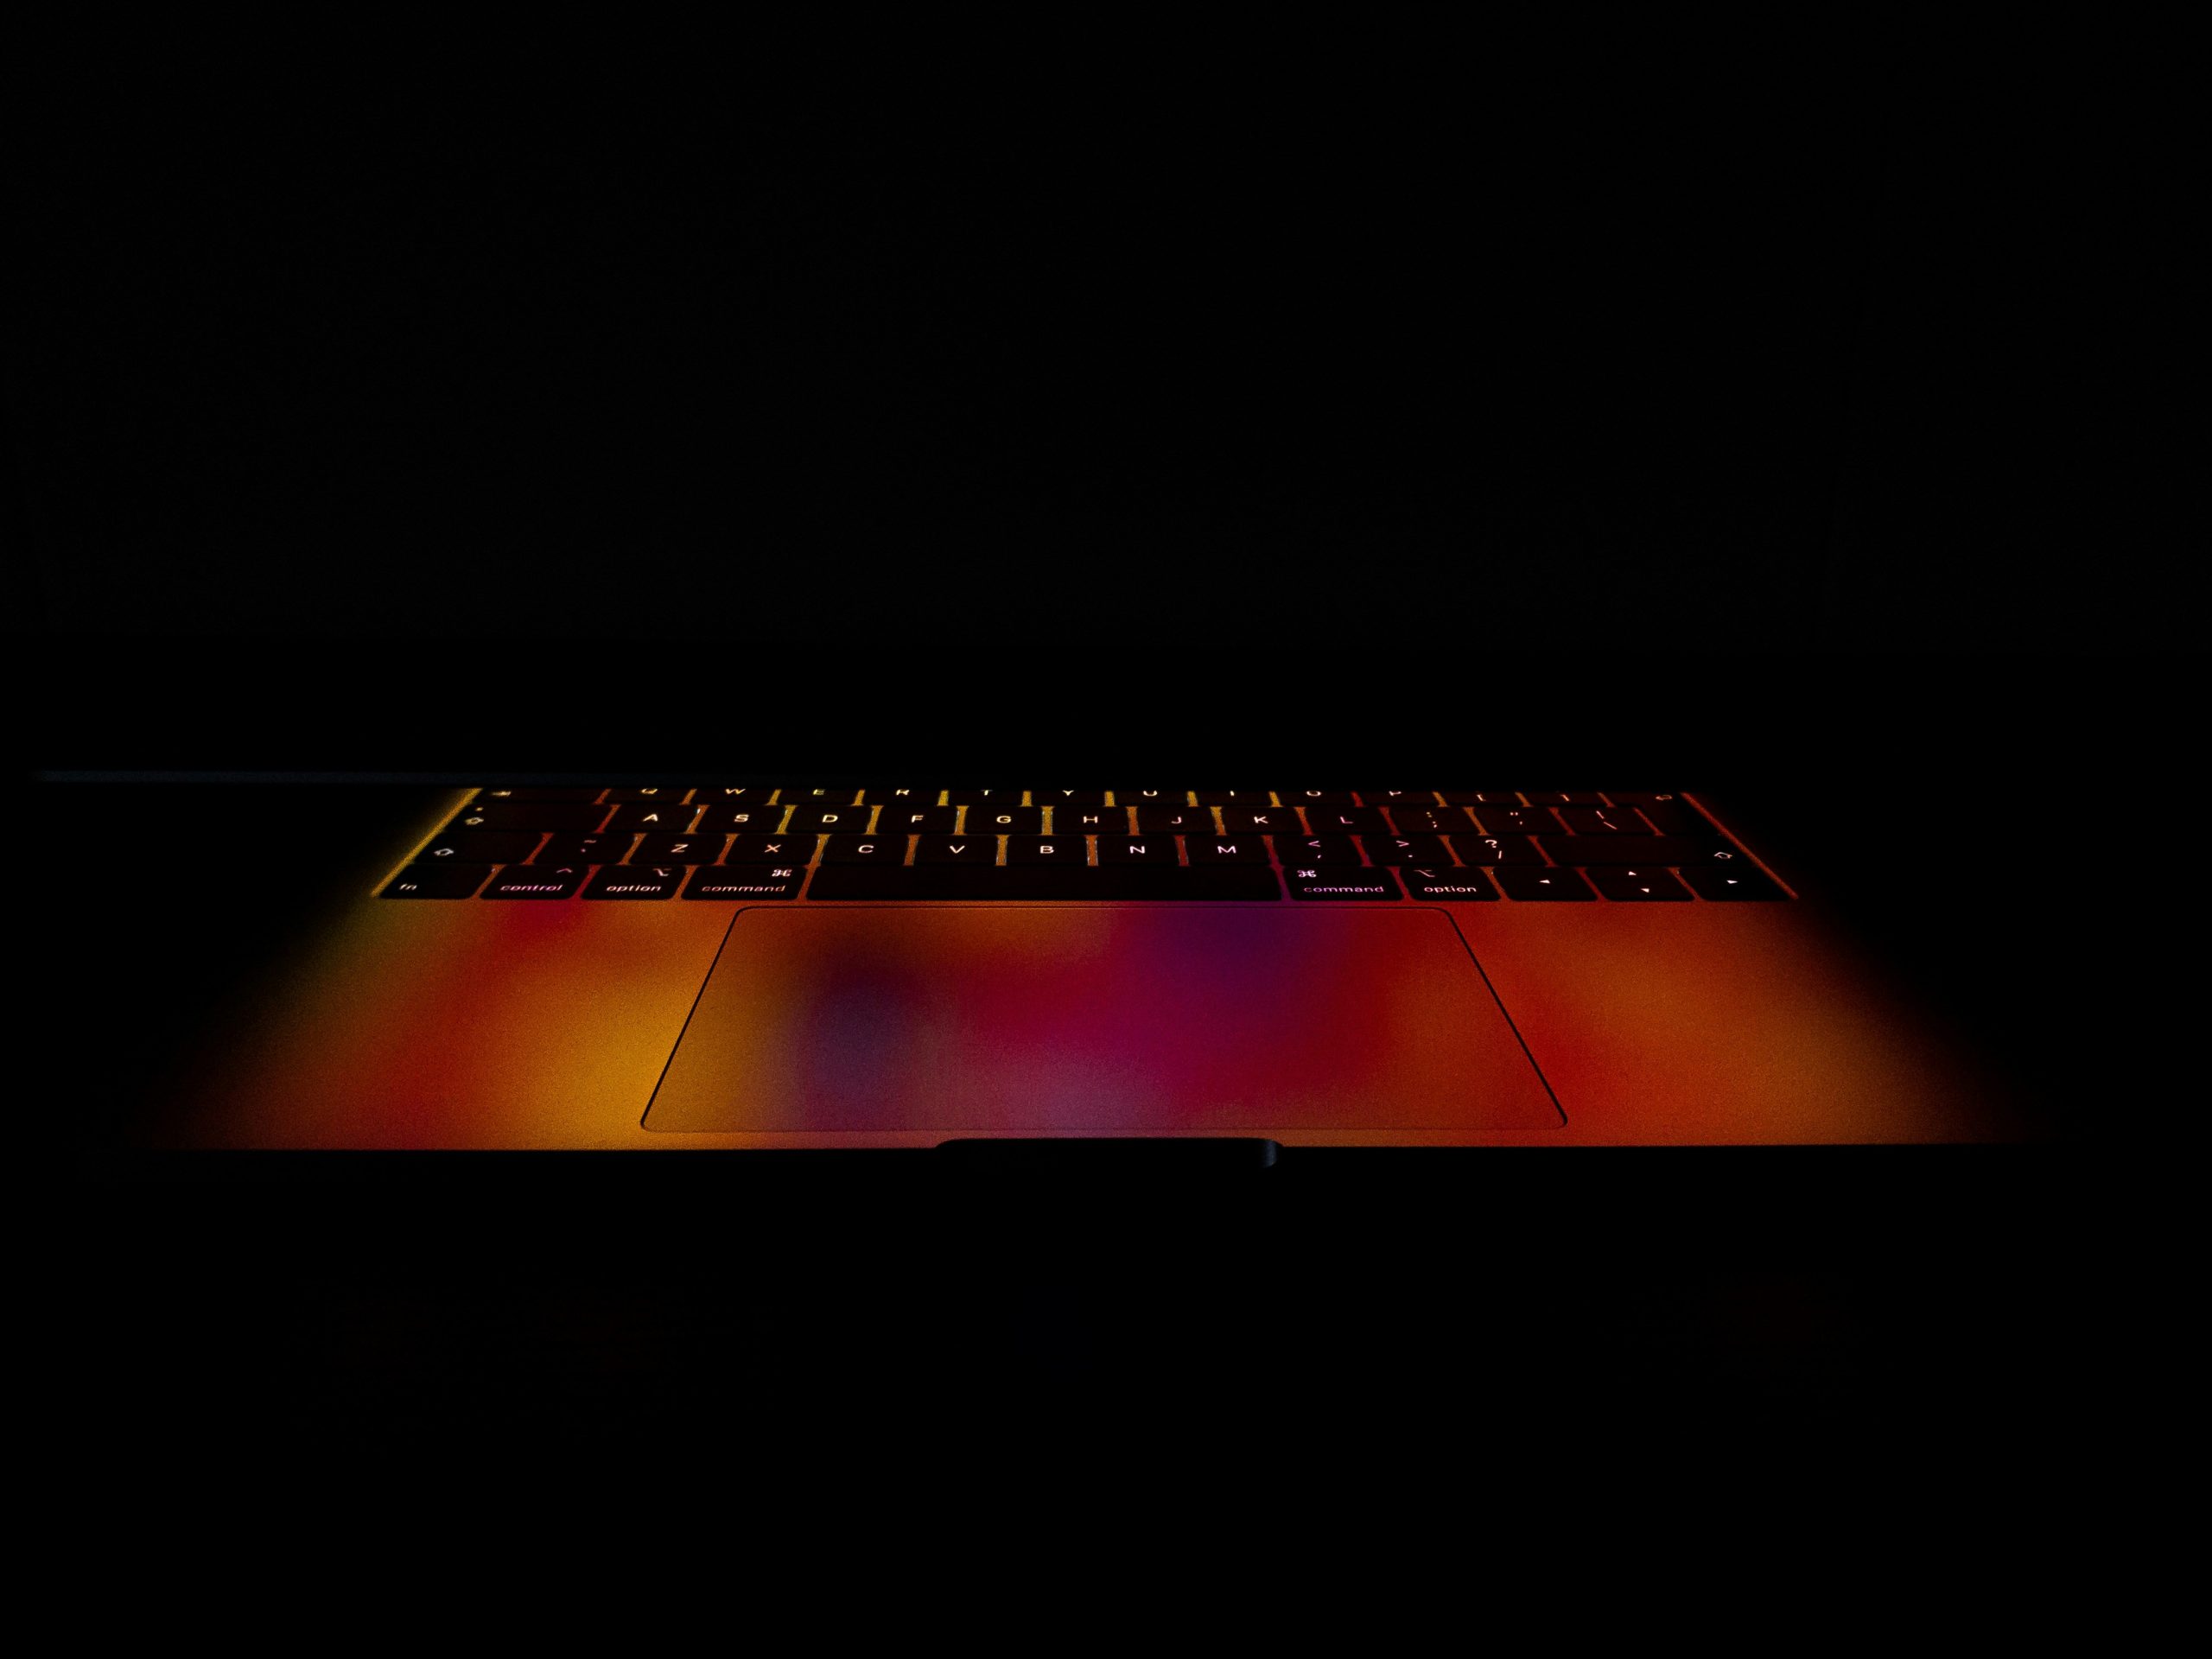 keyboard led